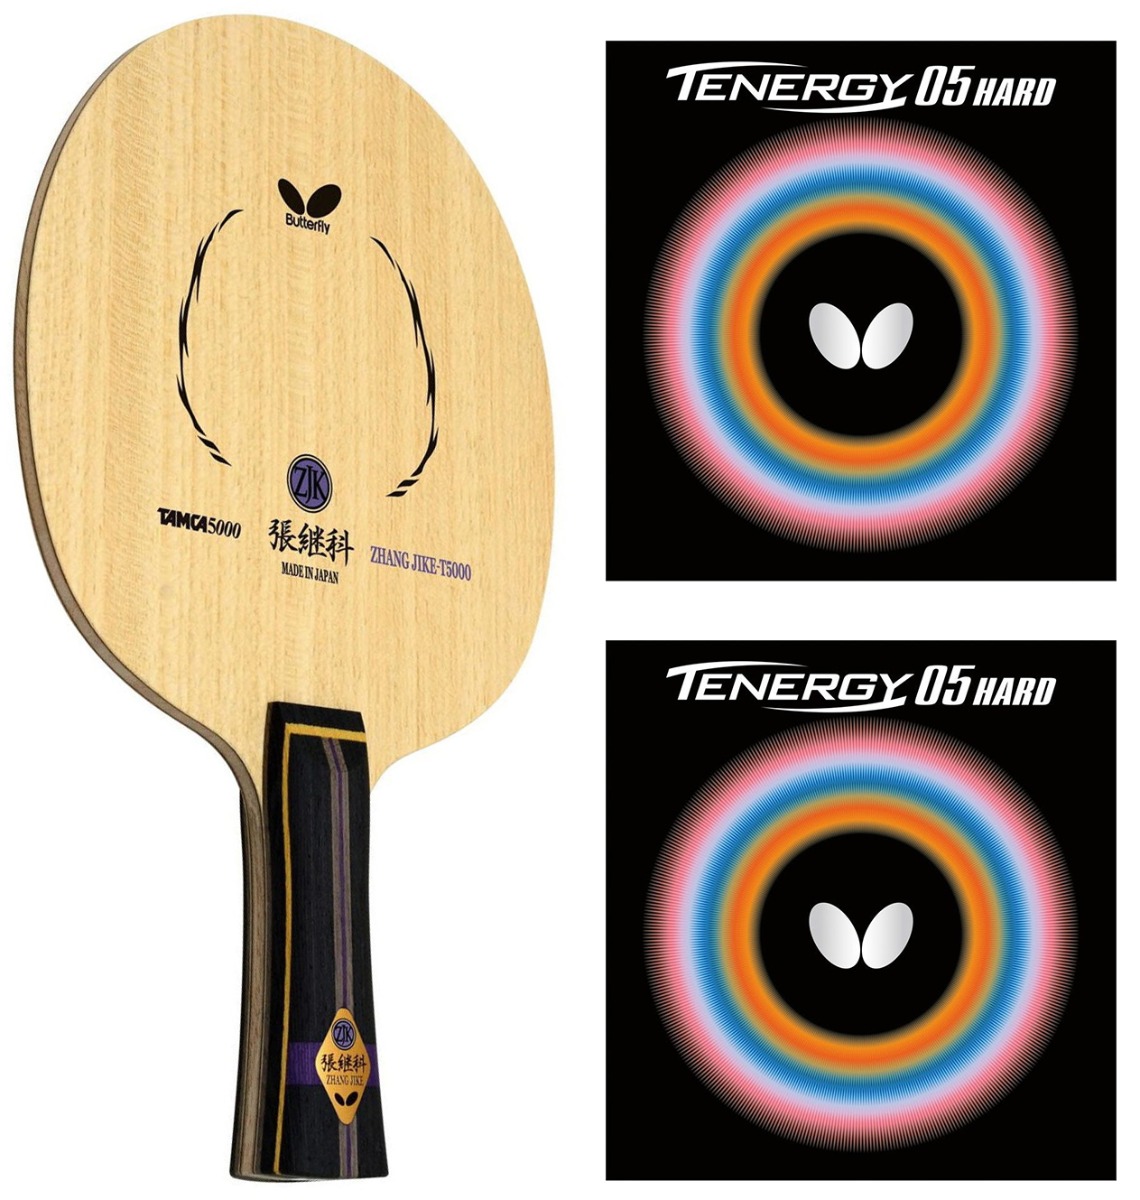 Zerama Professionelle Pingpong-Schläger Holz Gummi Anti-Skid Griff Tischtennis Paddel mit 2 Bälle und Travel Case